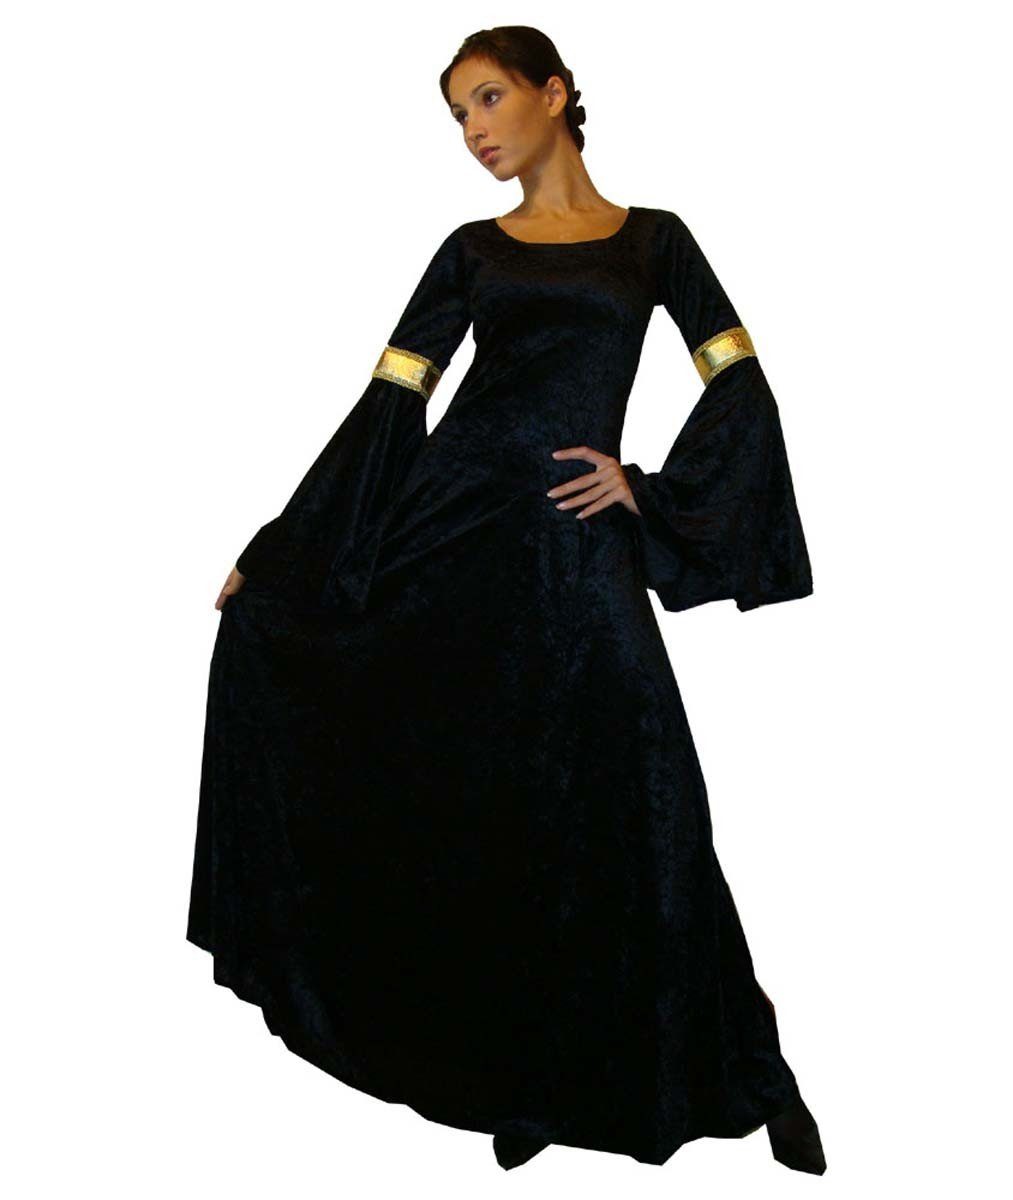 Maylynn Prinzessin-Kostüm »Mittelalter Kostüm Kleid Gewand Elbentraum Elfe  Fee Faschingskostüm« online kaufen | OTTO